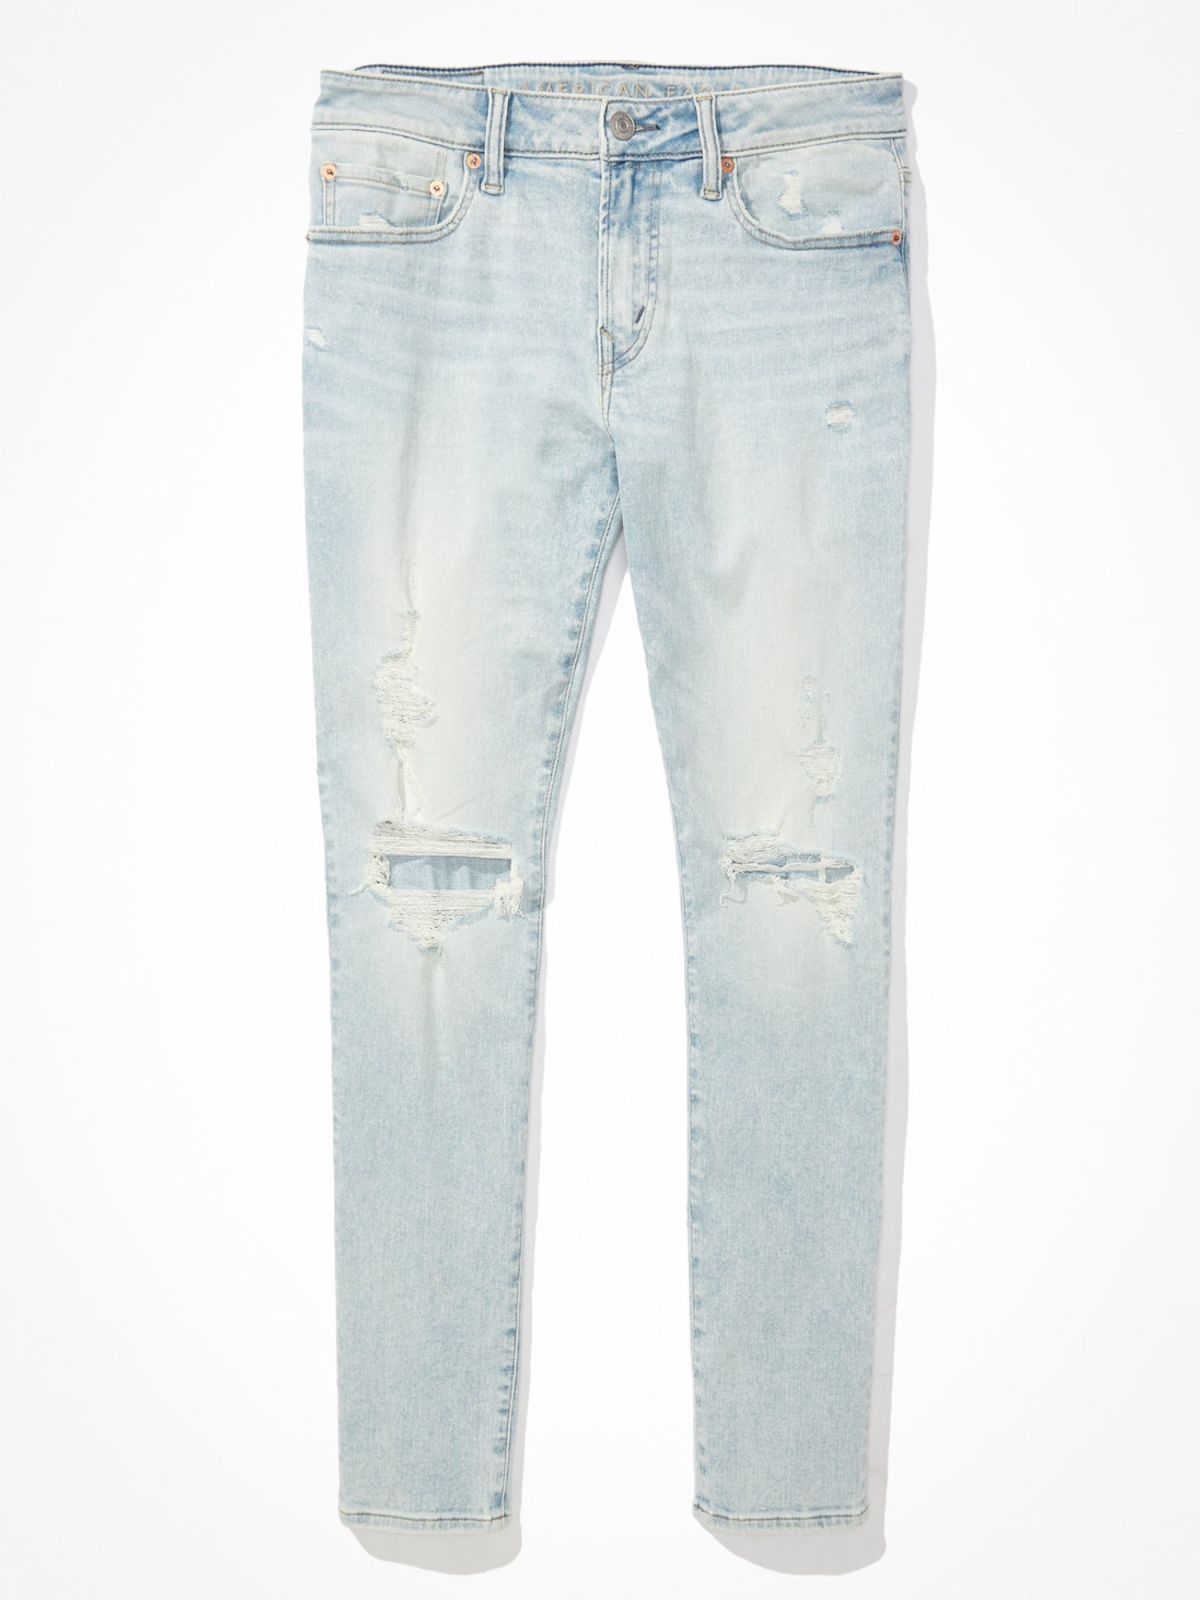  ג'ינס סקיני ארוך עם קרעים של AMERICAN EAGLE